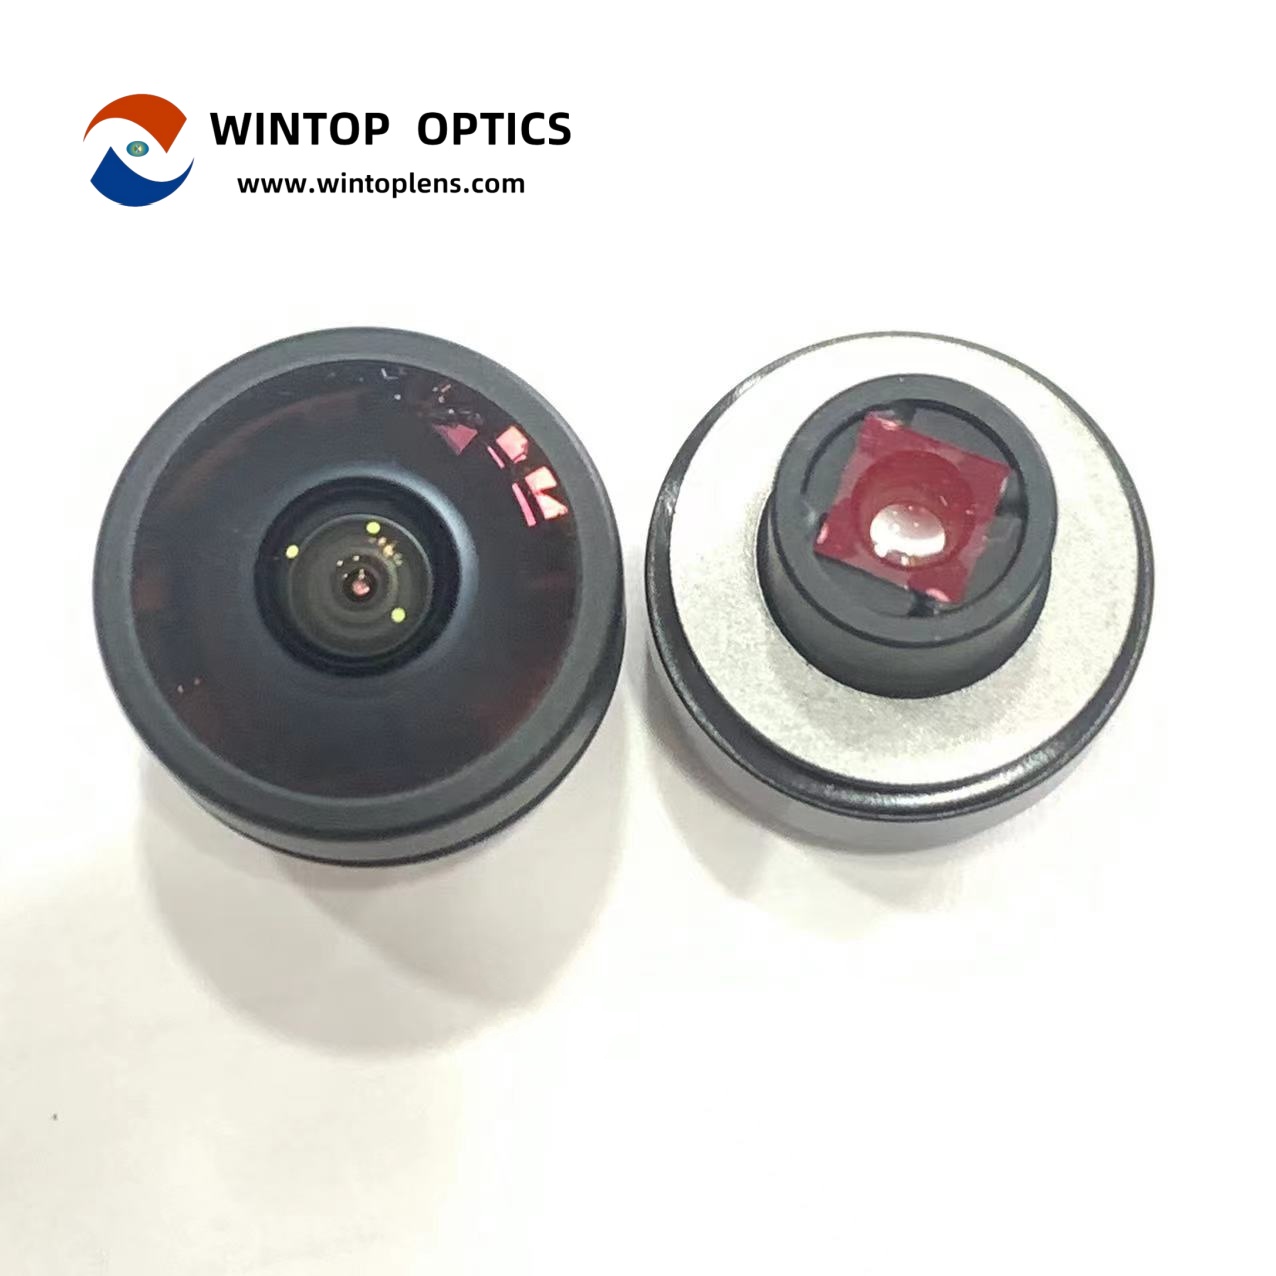 HFOV 200 度パノラマ バックカメラ レンズ YT-7070-H1-A - WINTOP OPTICS